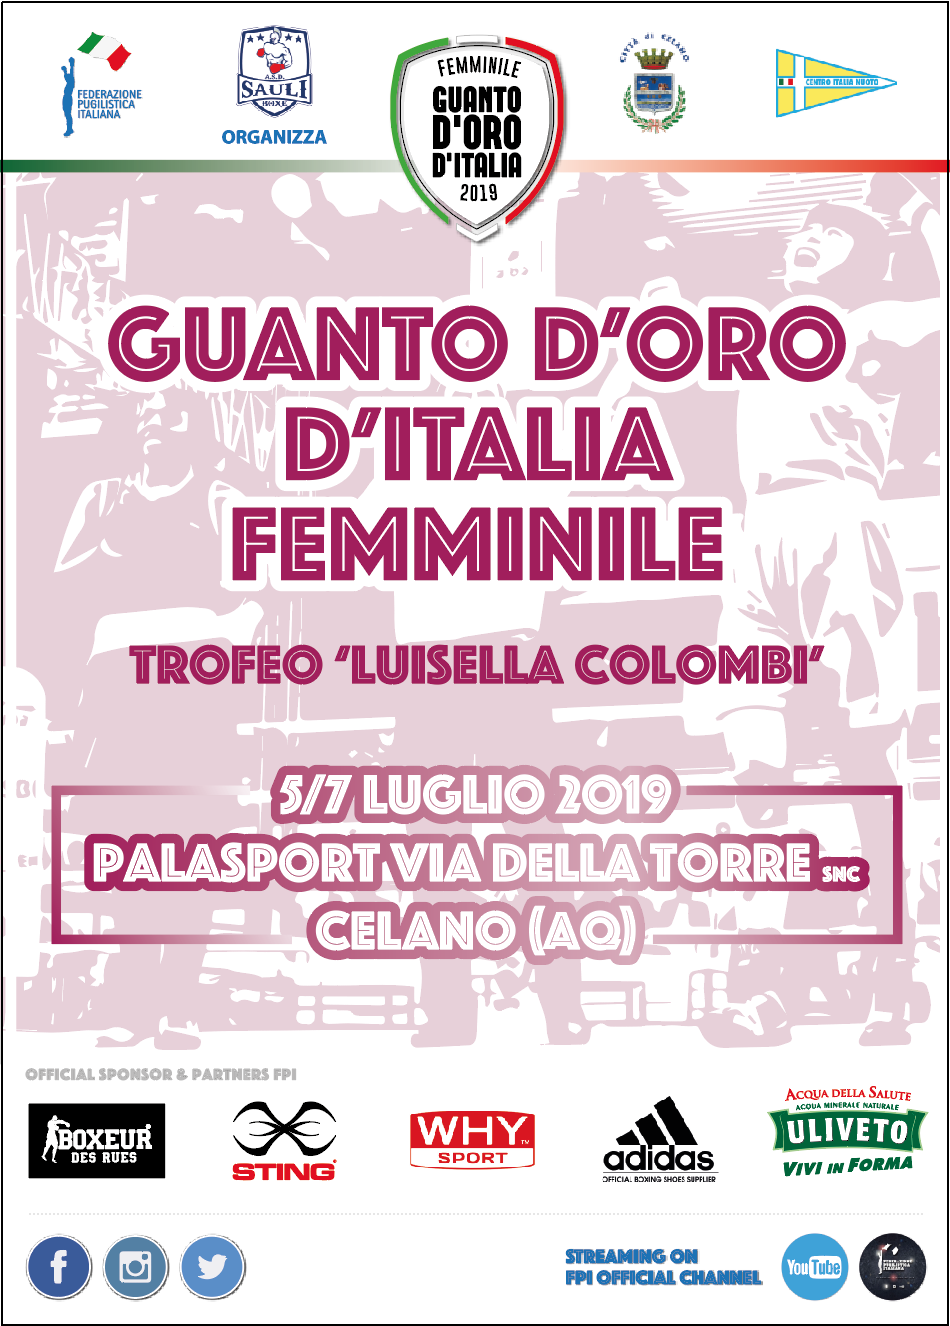 Guanto D'Oro Femminile - Trofeo Colombi 2019: Celano (AQ) 5-7 Luglio - LA LOCANDINA UFFICIALE #GuantoF19